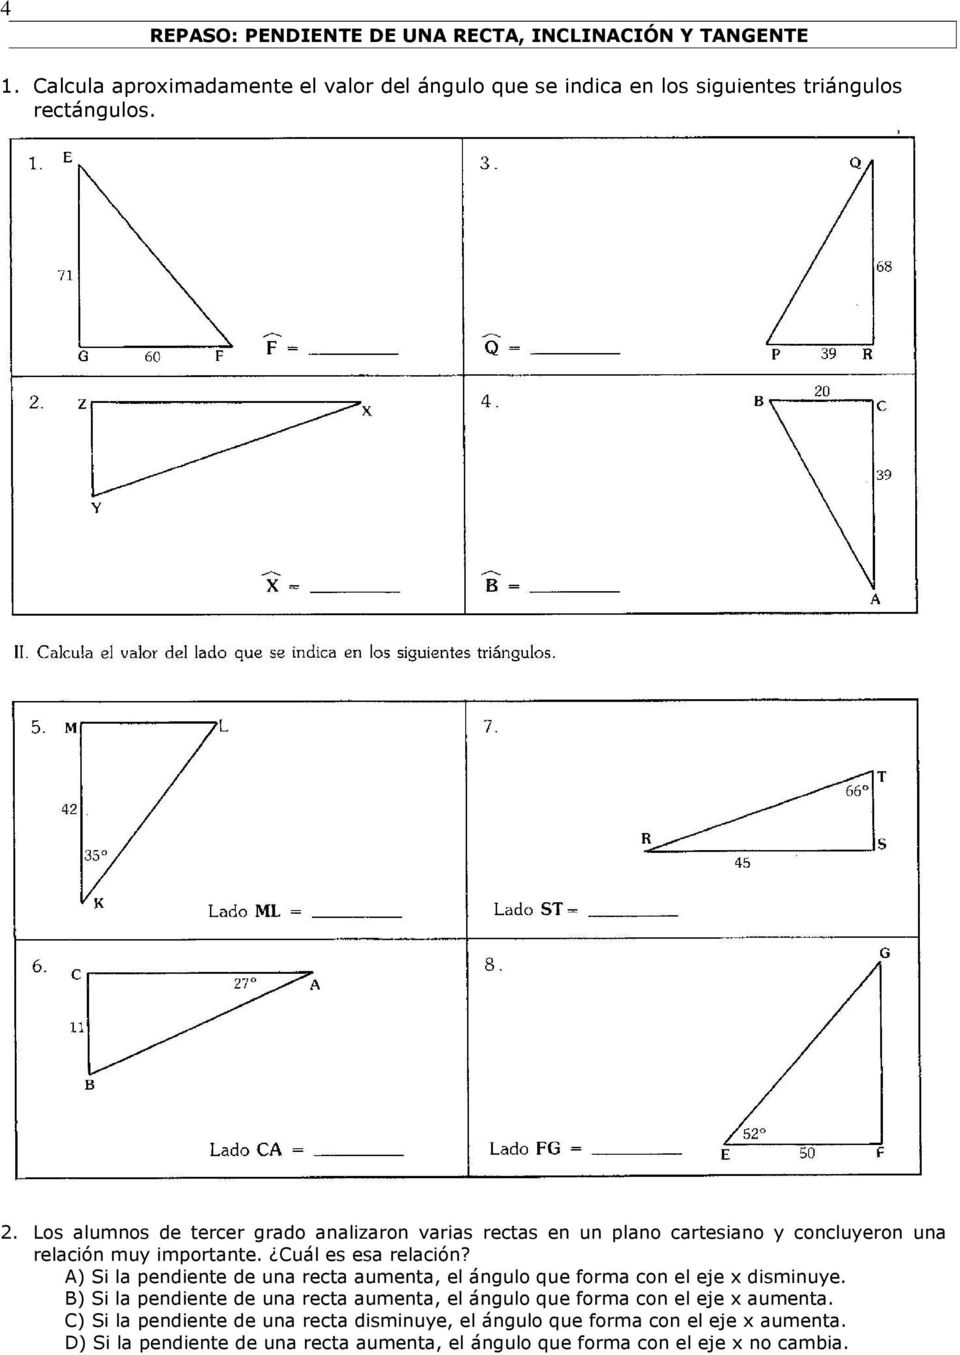 A) Si la pendiente de una recta aumenta, el ángulo que forma con el eje x disminuye.